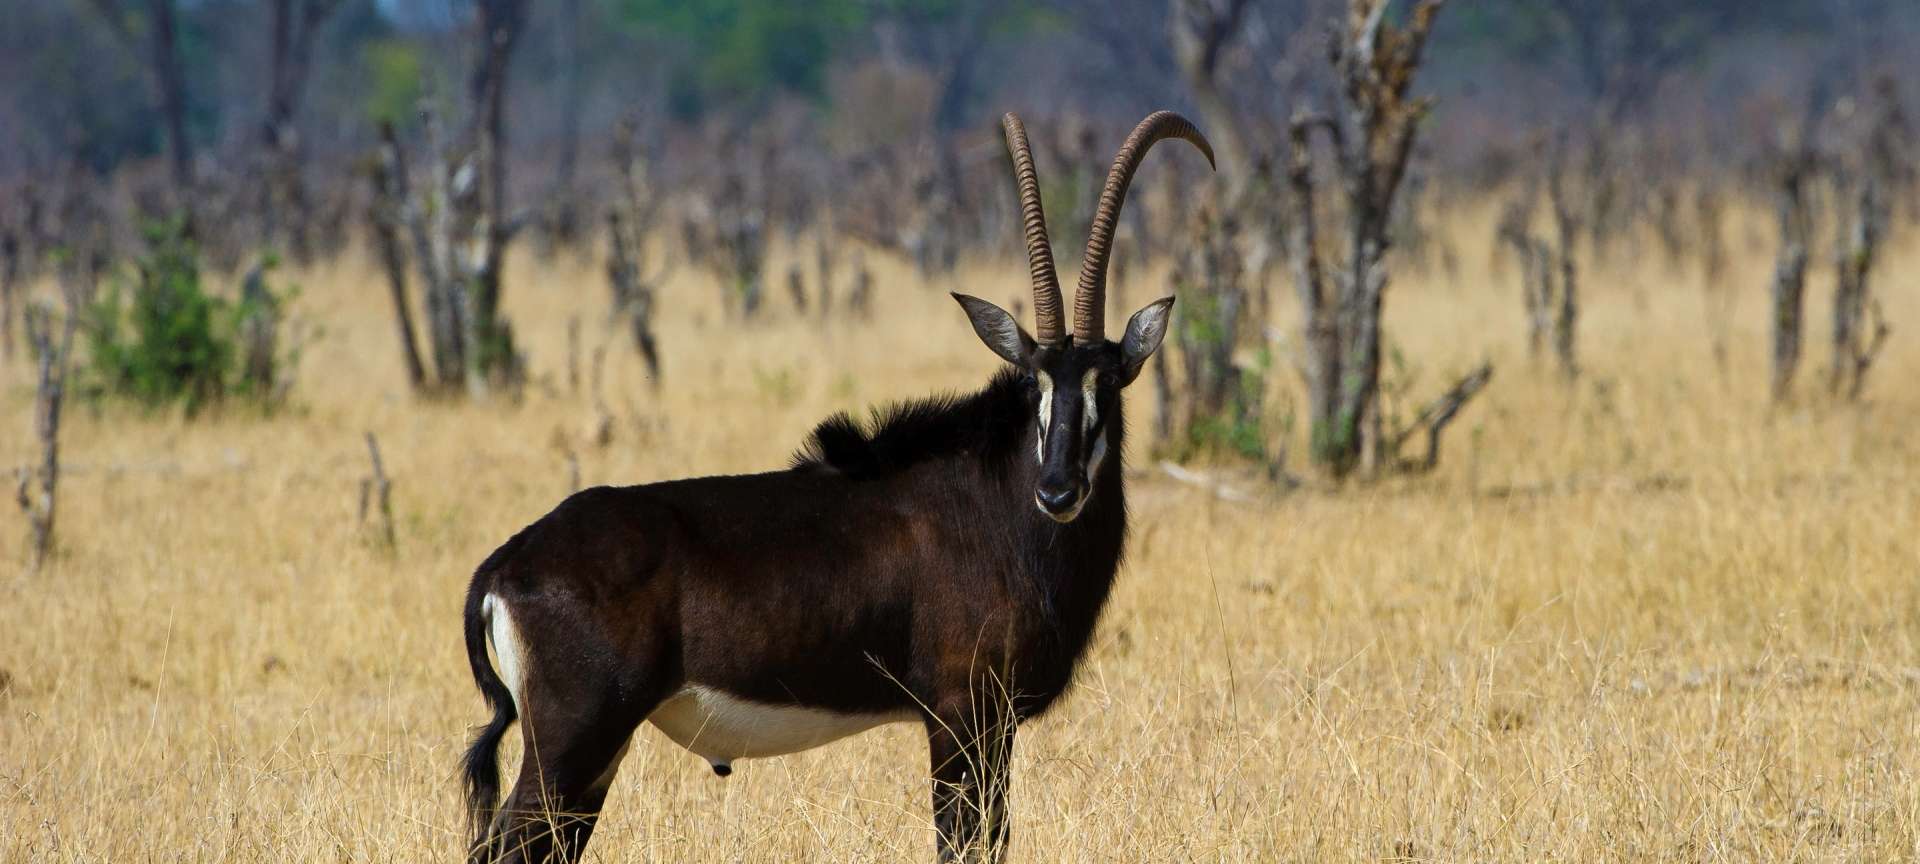 Makalolo Camp_Sable bull_antelope _Hwange National park_Zimbabwe_Destination